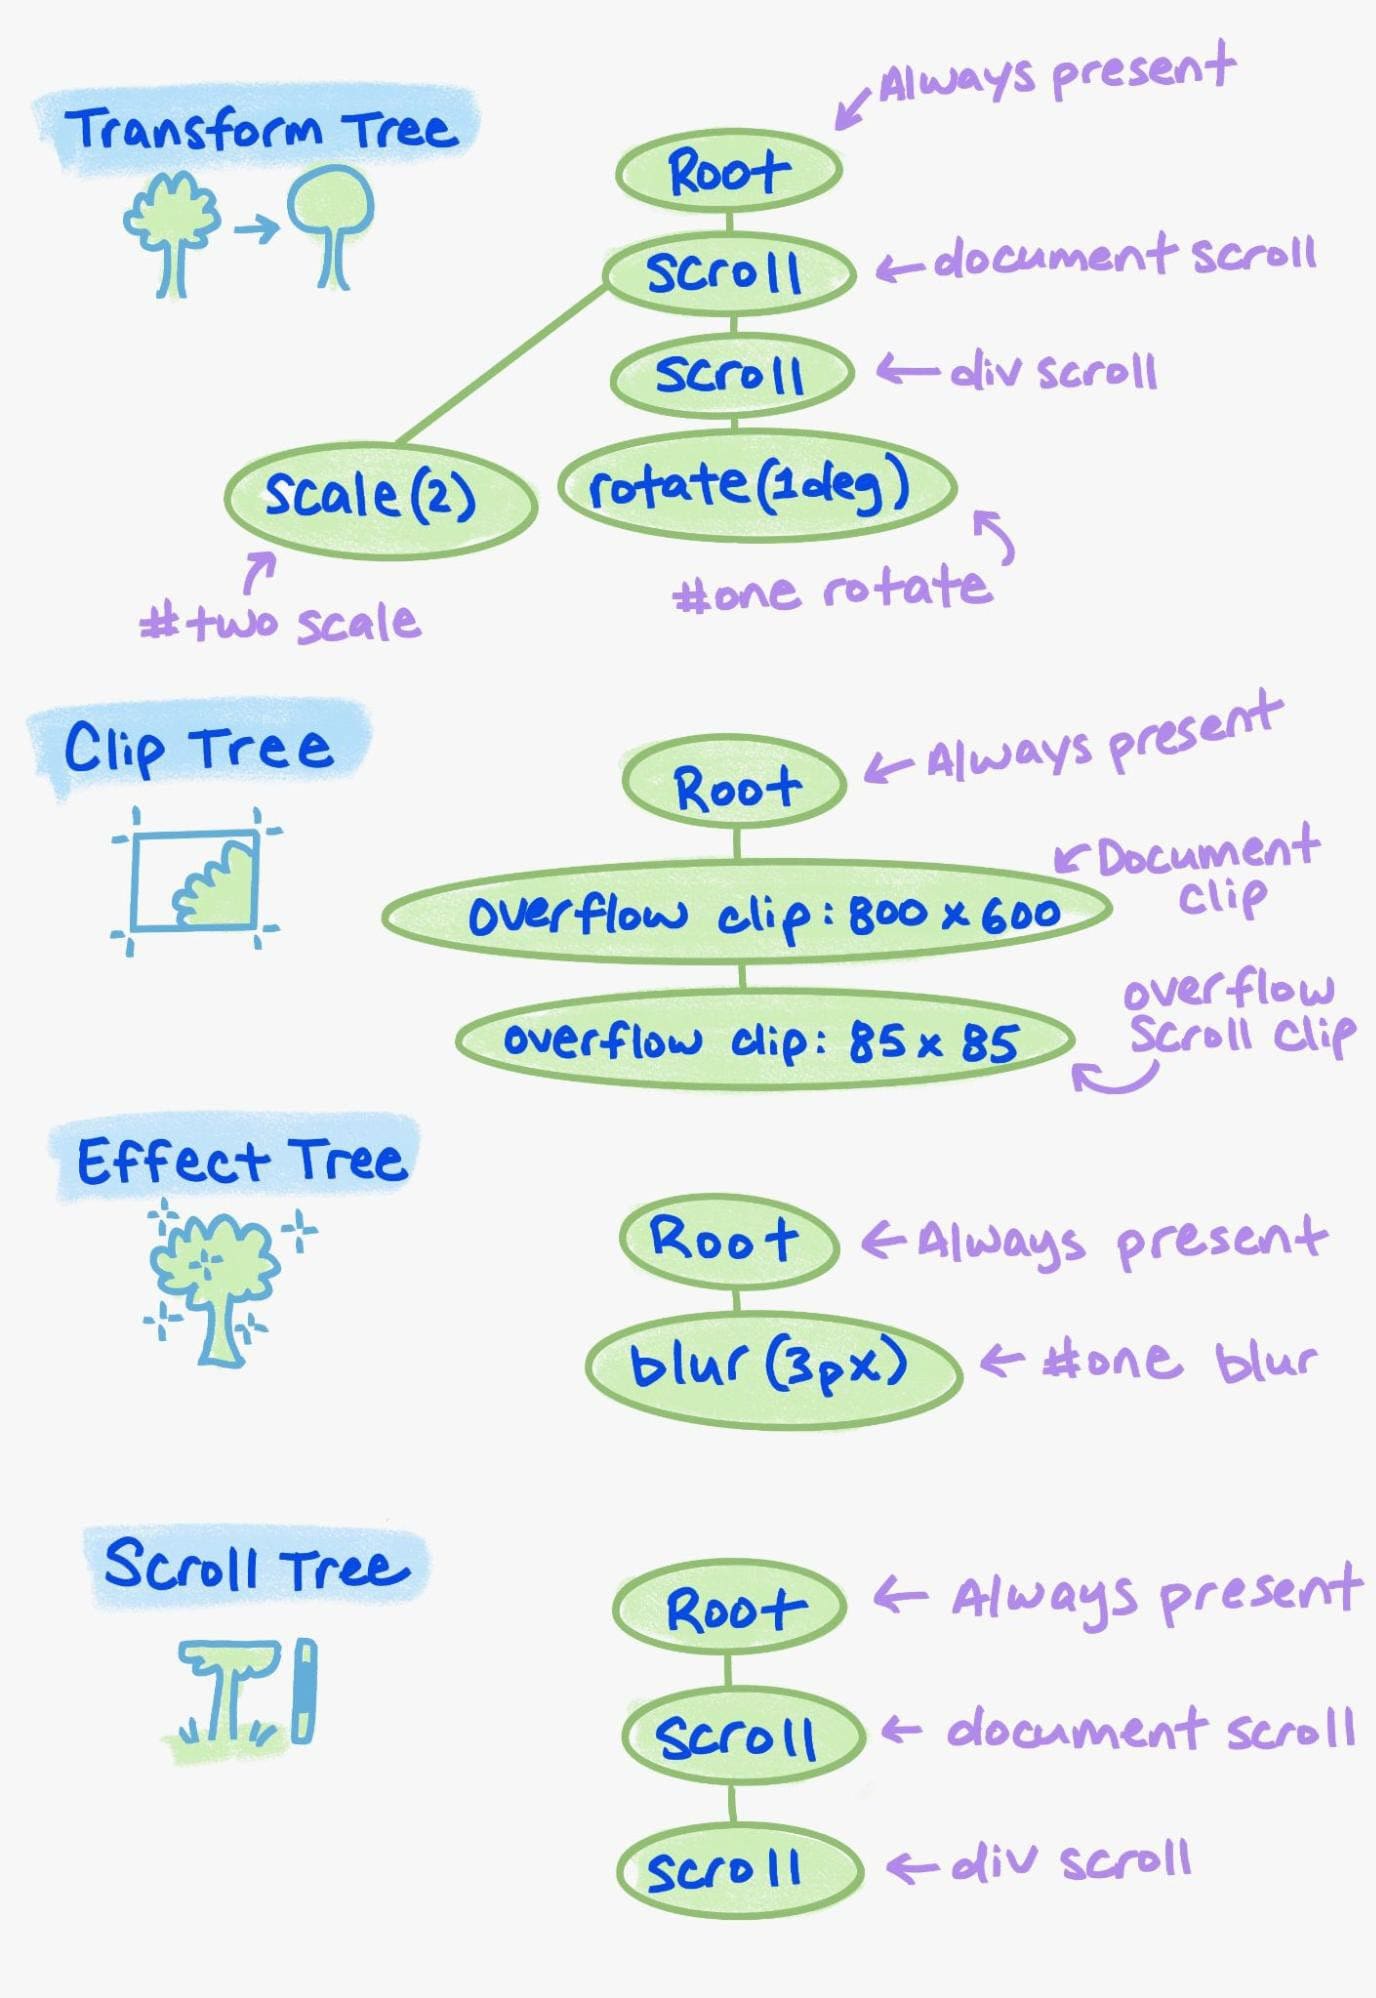 Beispiel für die verschiedenen Elemente im Eigenschaftenbaum